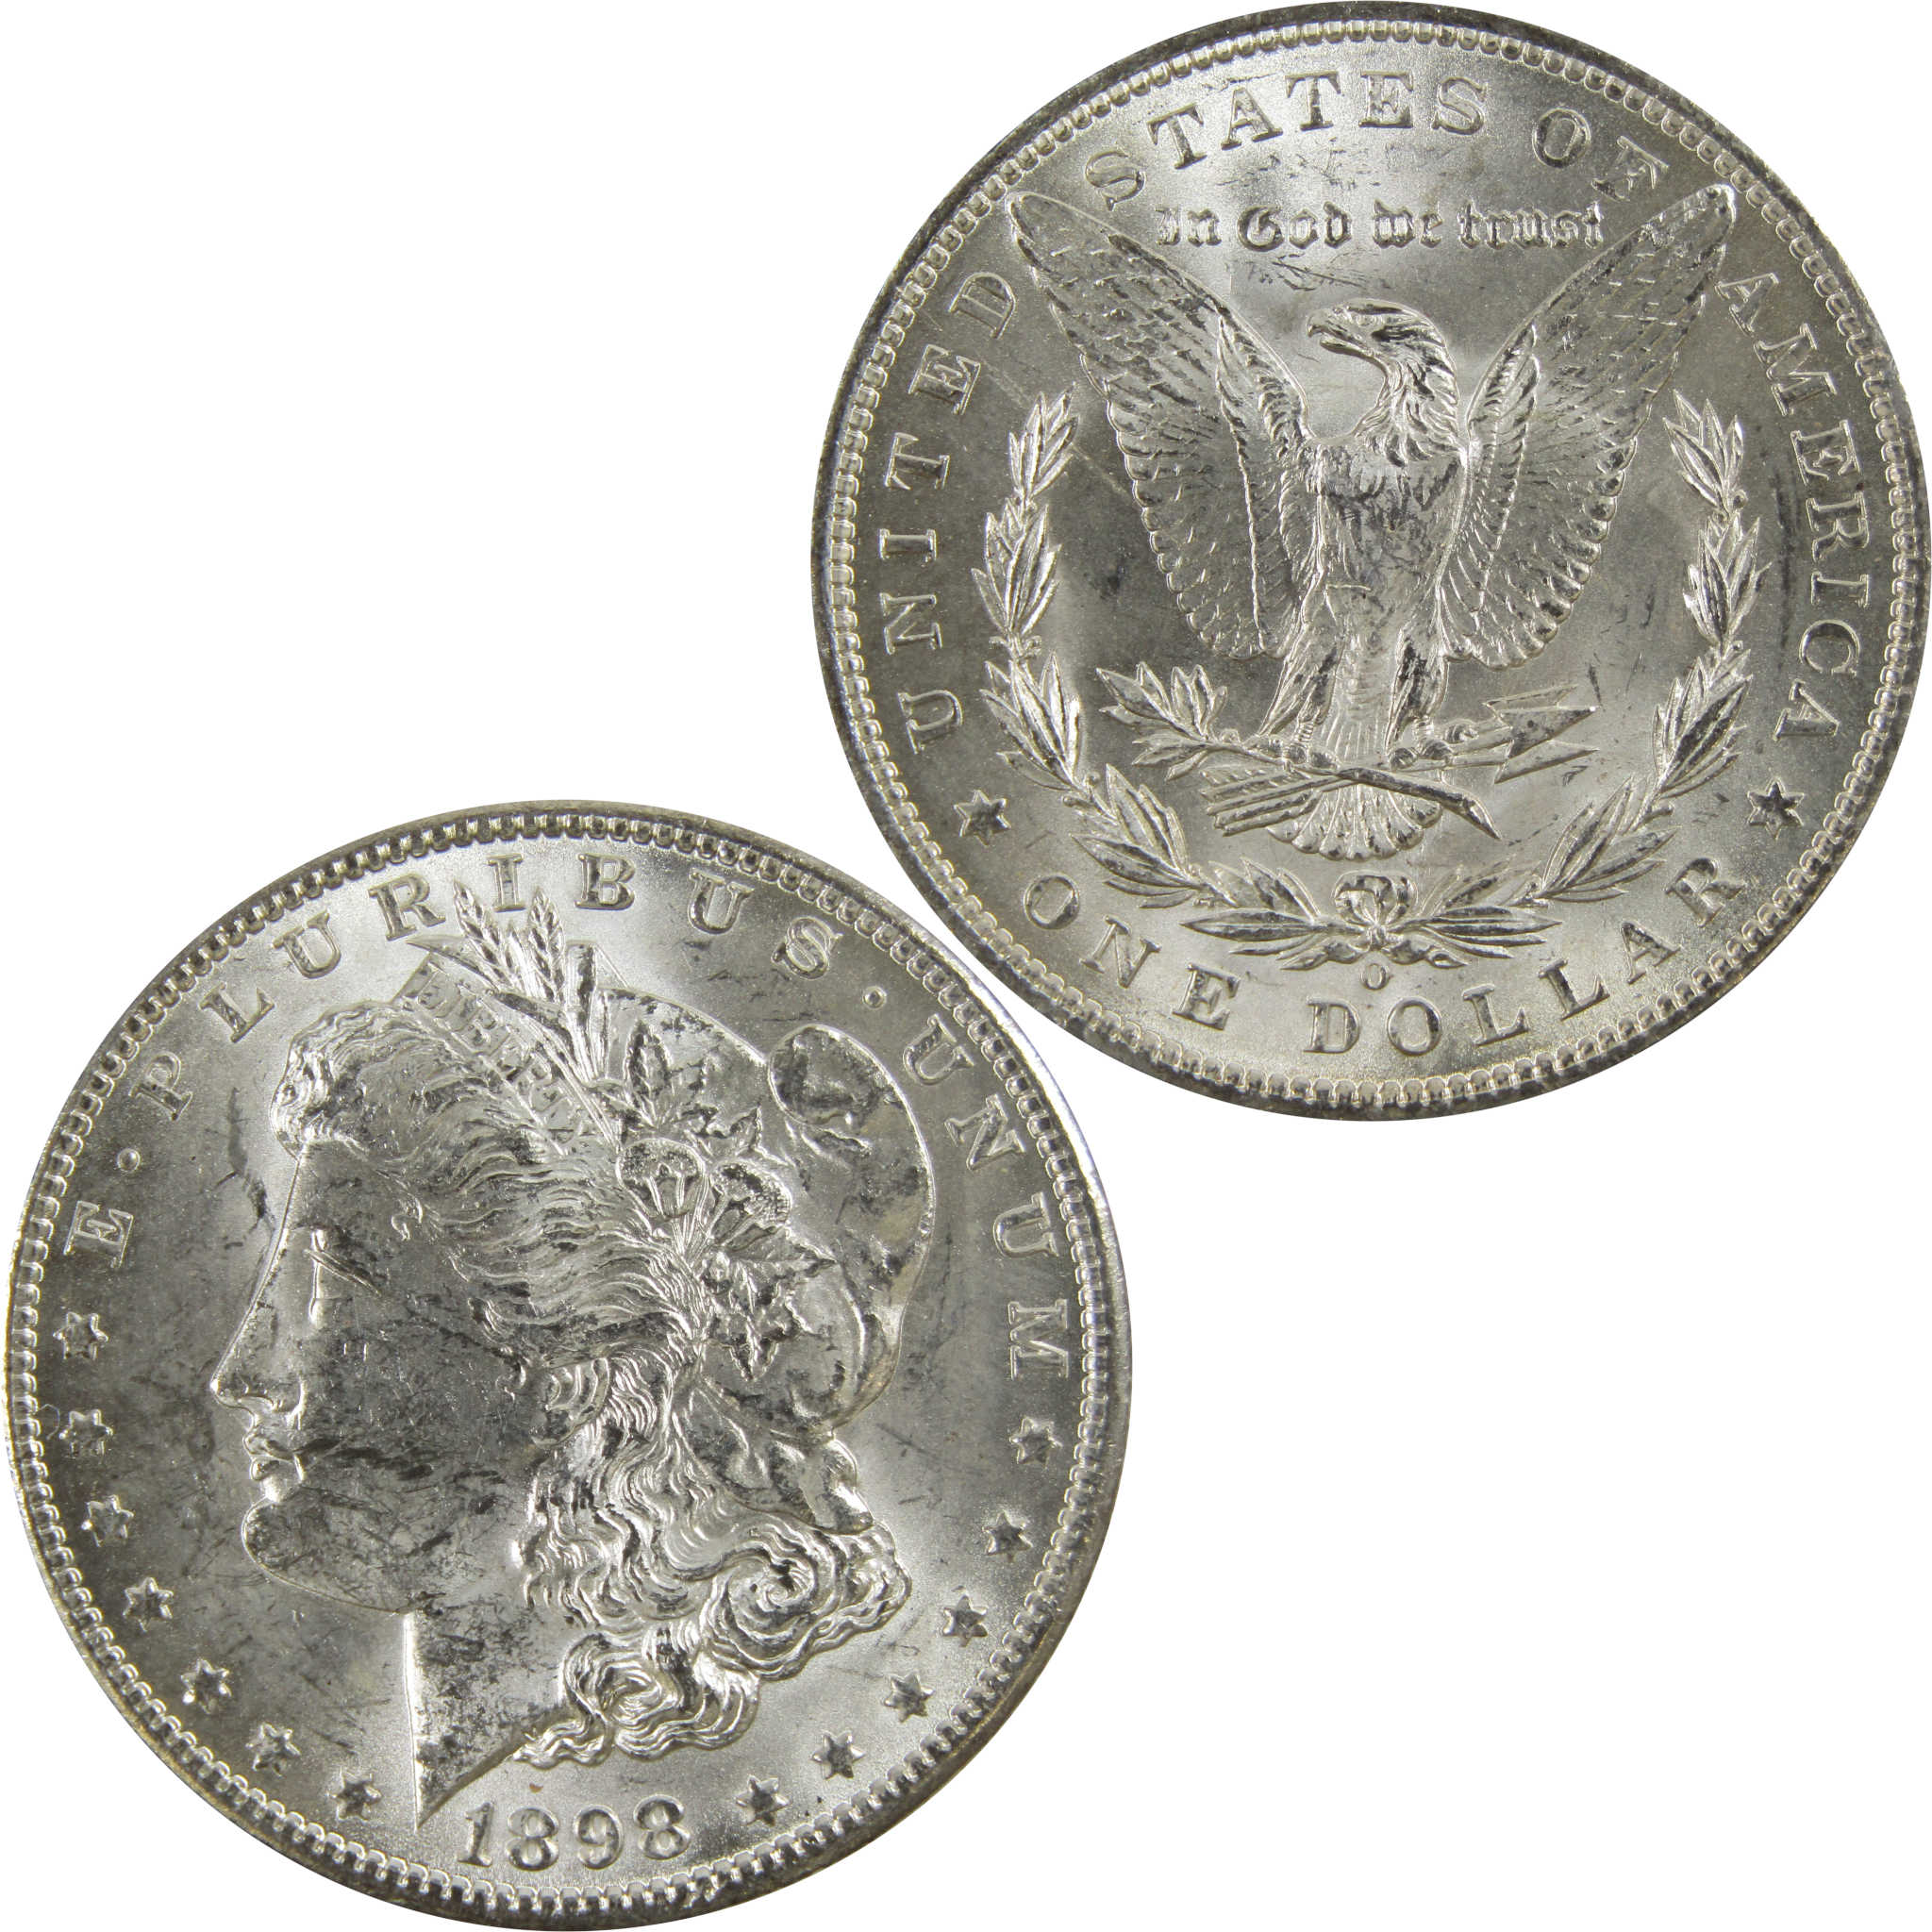 1898 O Morgan Dollar BU Uncirculated 90% Silver $1 Coin SKU:I5226 - Morgan coin - Morgan silver dollar - Morgan silver dollar for sale - Profile Coins &amp; Collectibles